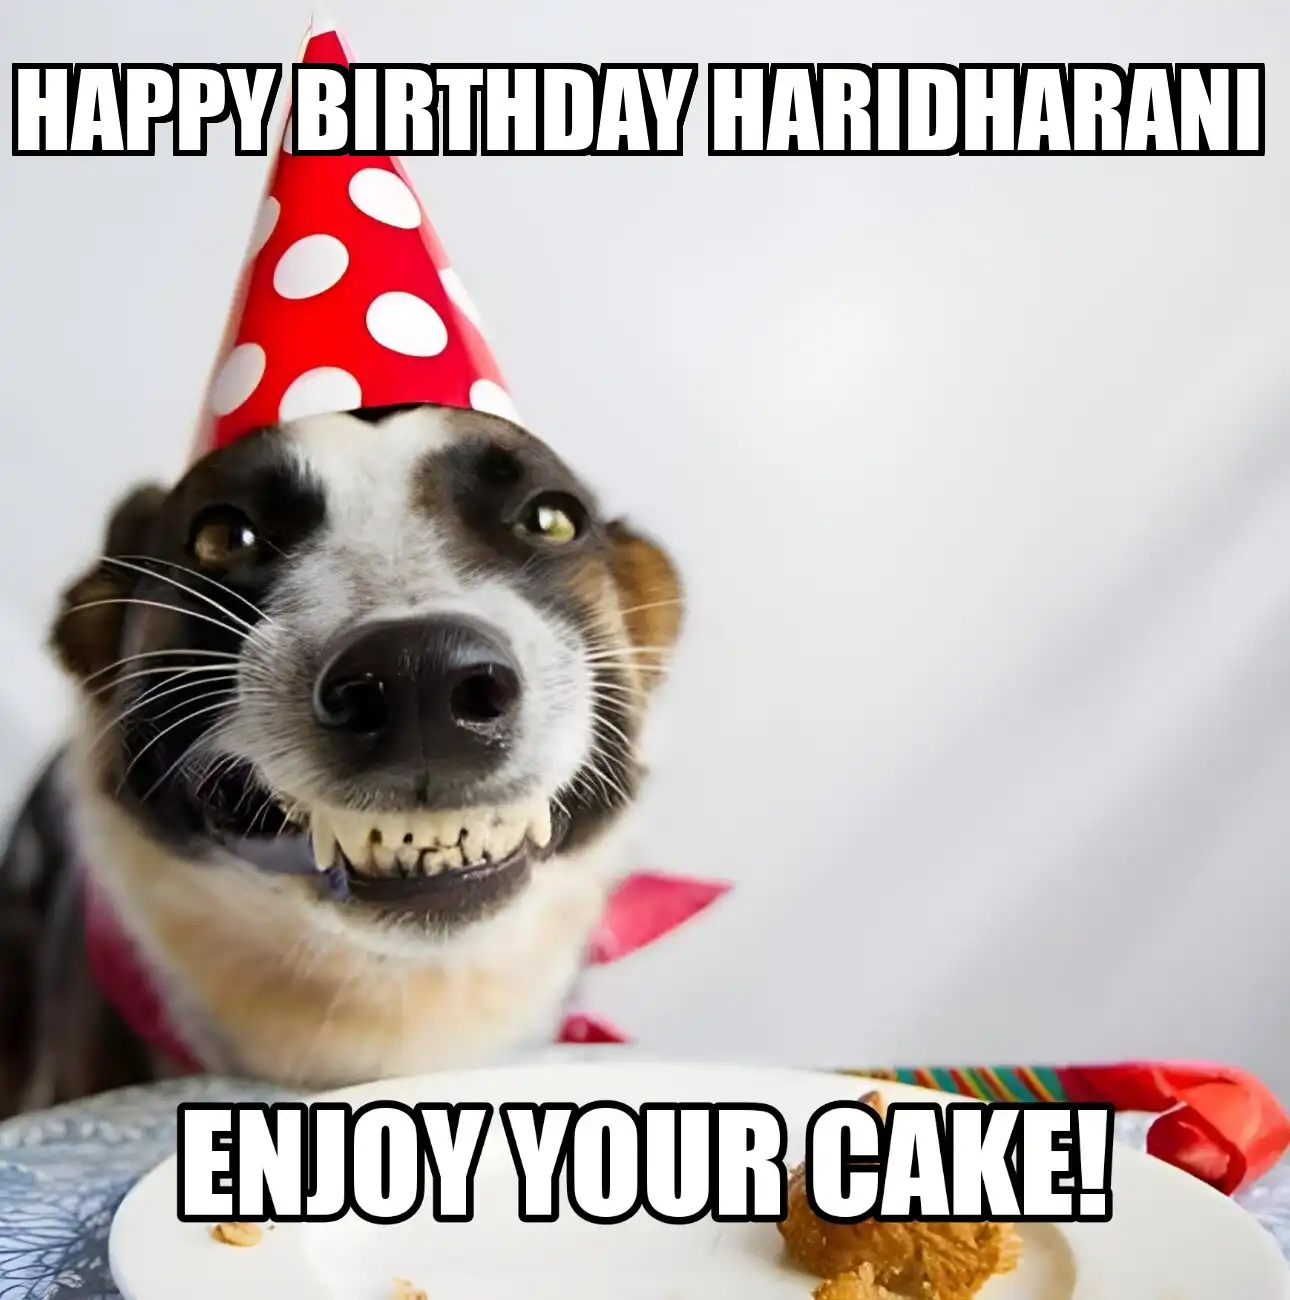 Happy Birthday Haridharani Enjoy Your Cake Dog Meme